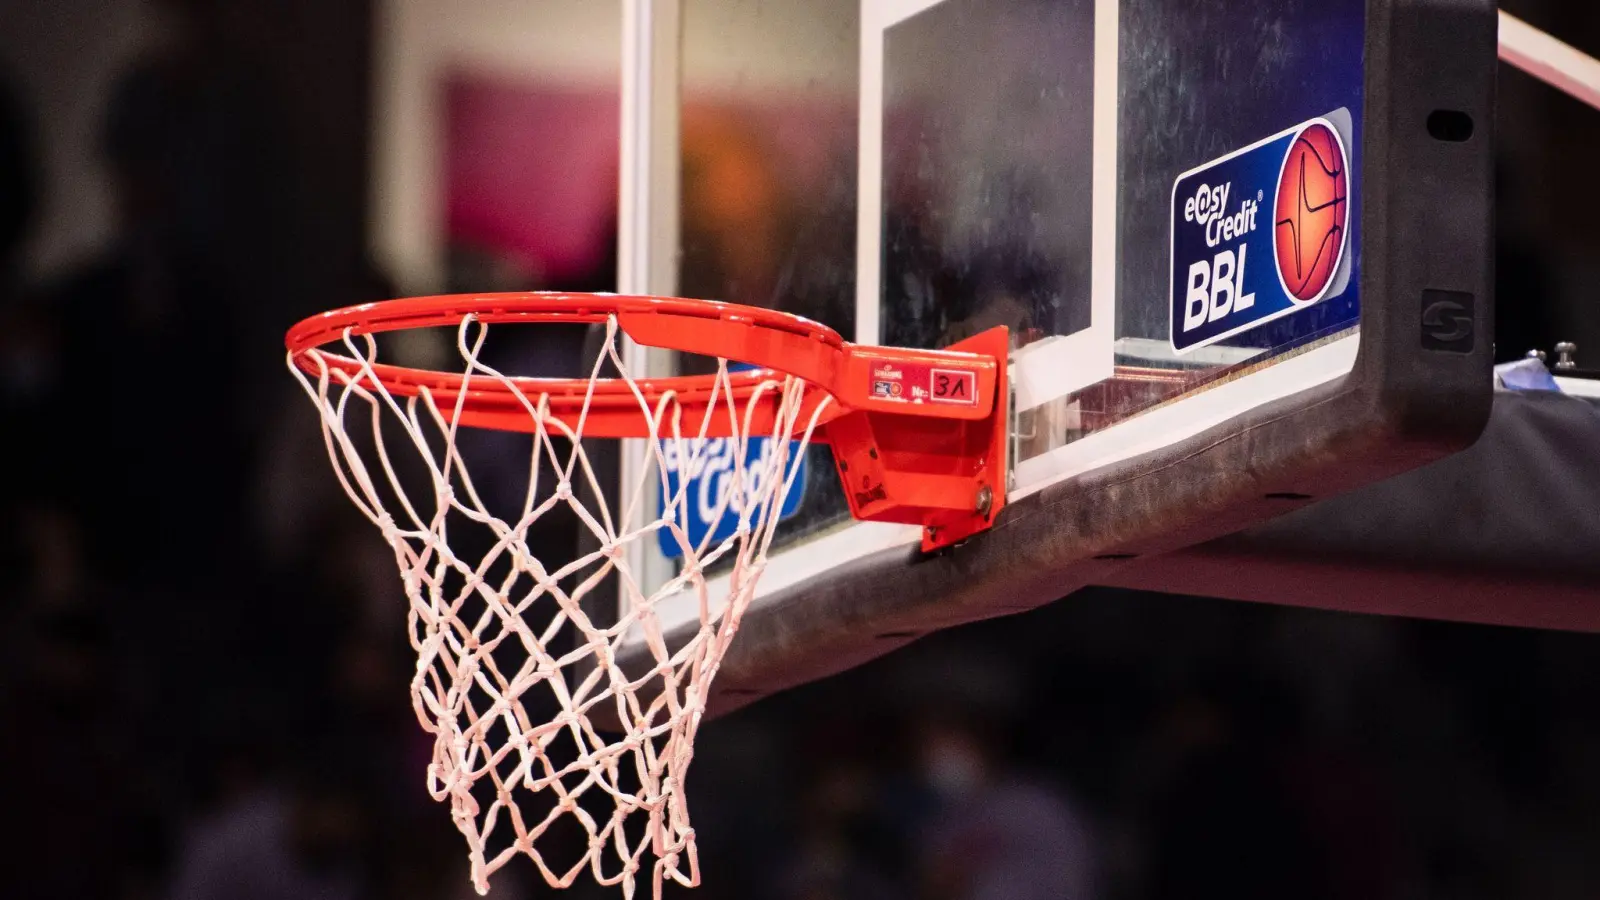 Ein easyCredit BBL-Logo klebt neben dem Basketballkorb. (Foto: Marius Becker/dpa/Archivbild)